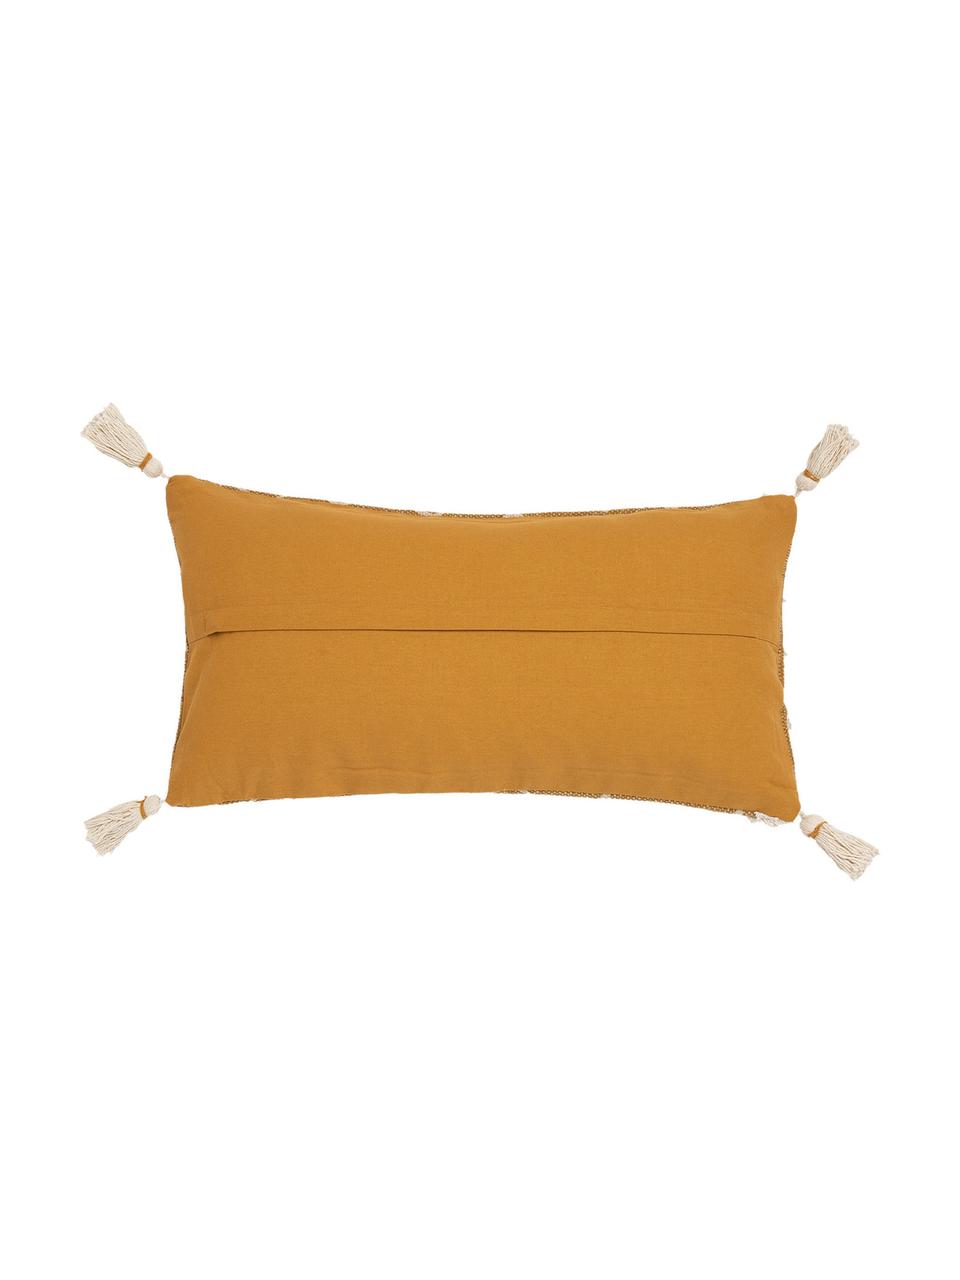 Poszewka na poduszkę z chwostami w stylu boho Boa, 100% bawełna, Żółty, biały, S 30 x D 60 cm